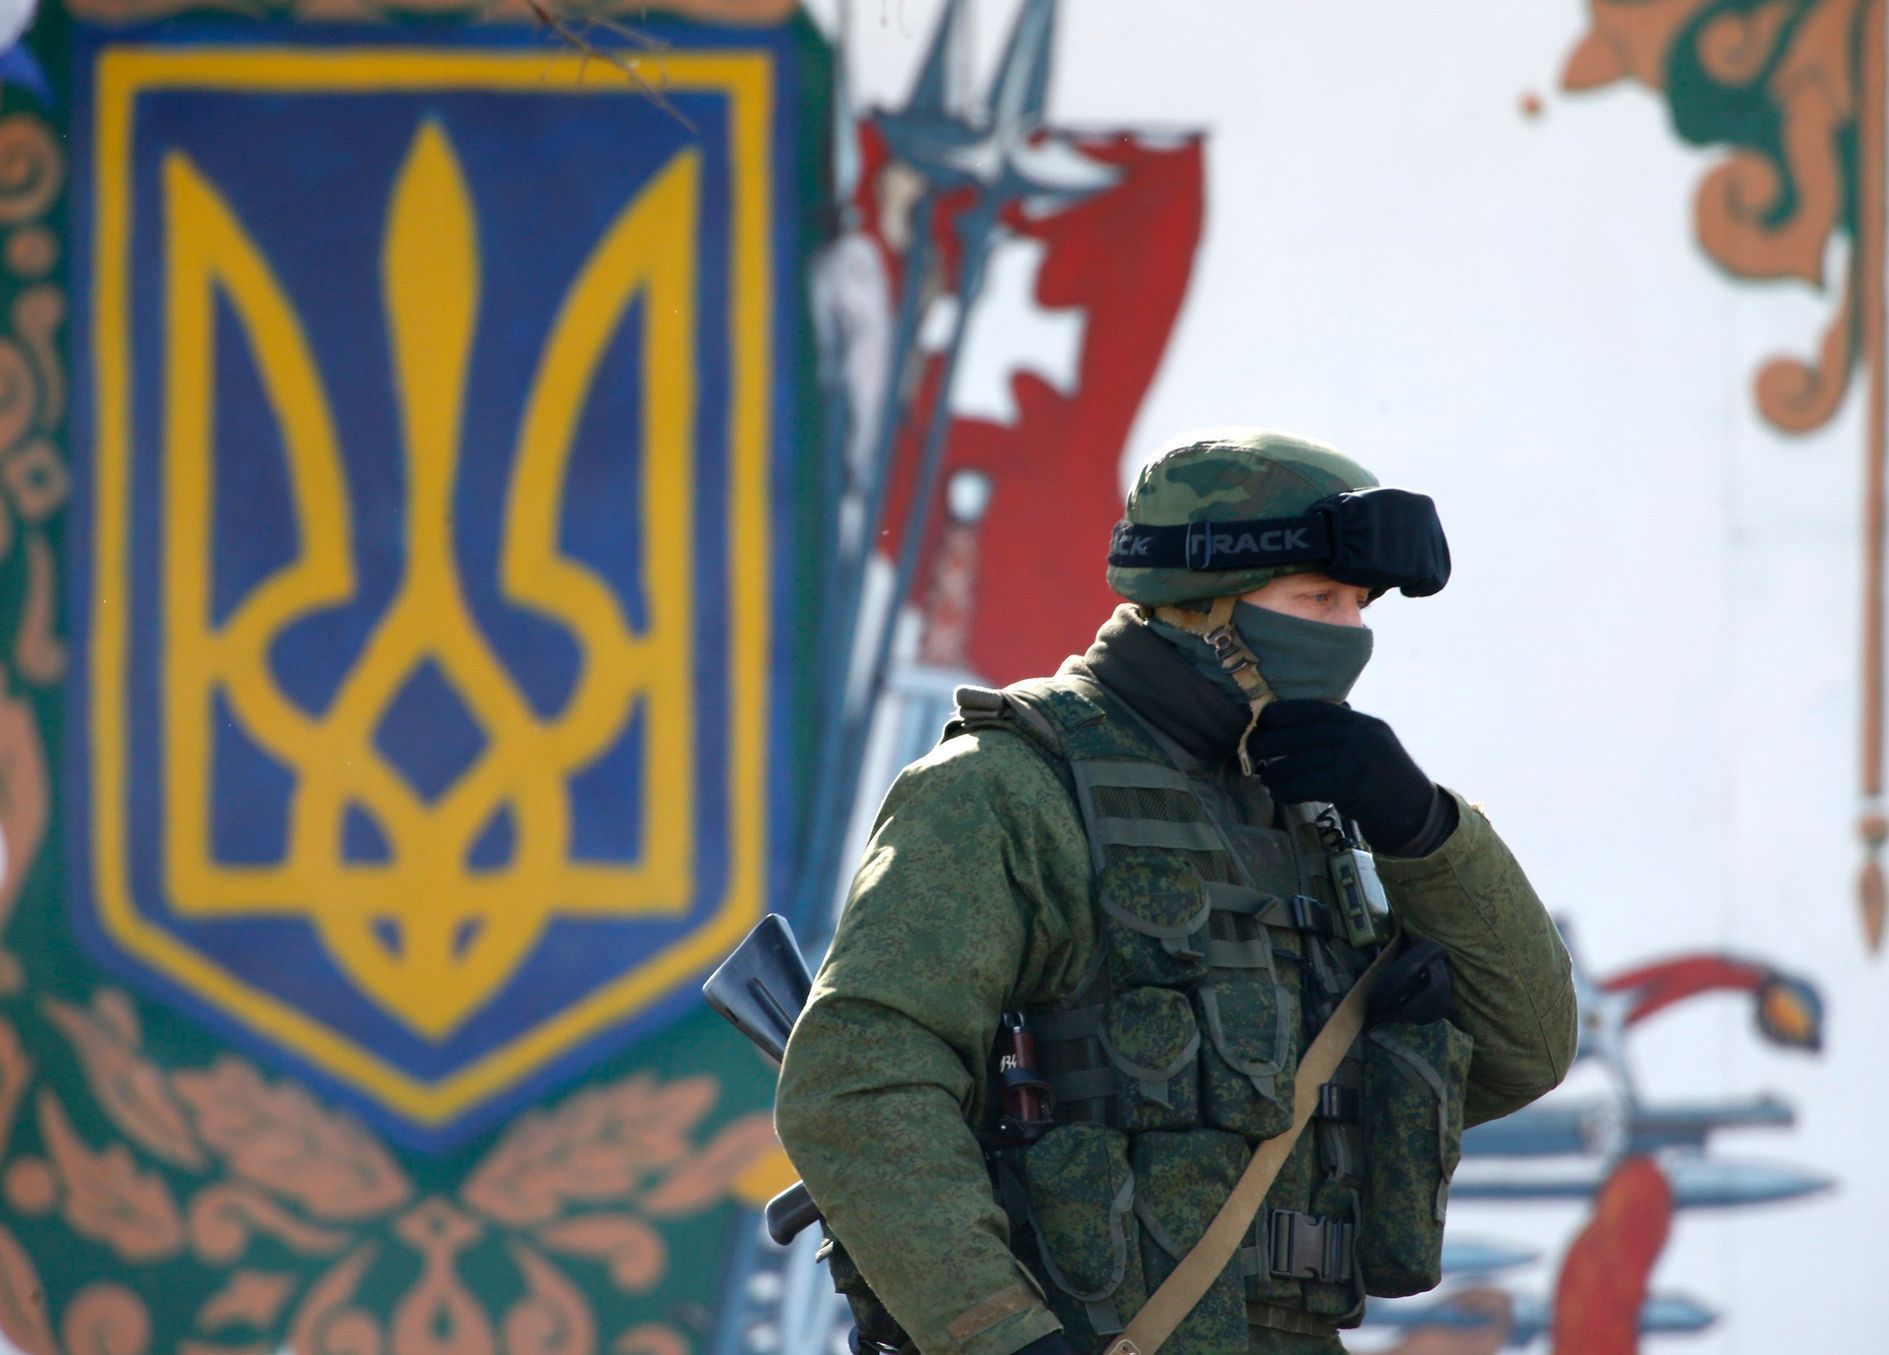 Ukrajina - Krym - Privolnoje - ruští vojáci - 5. 3. 2014